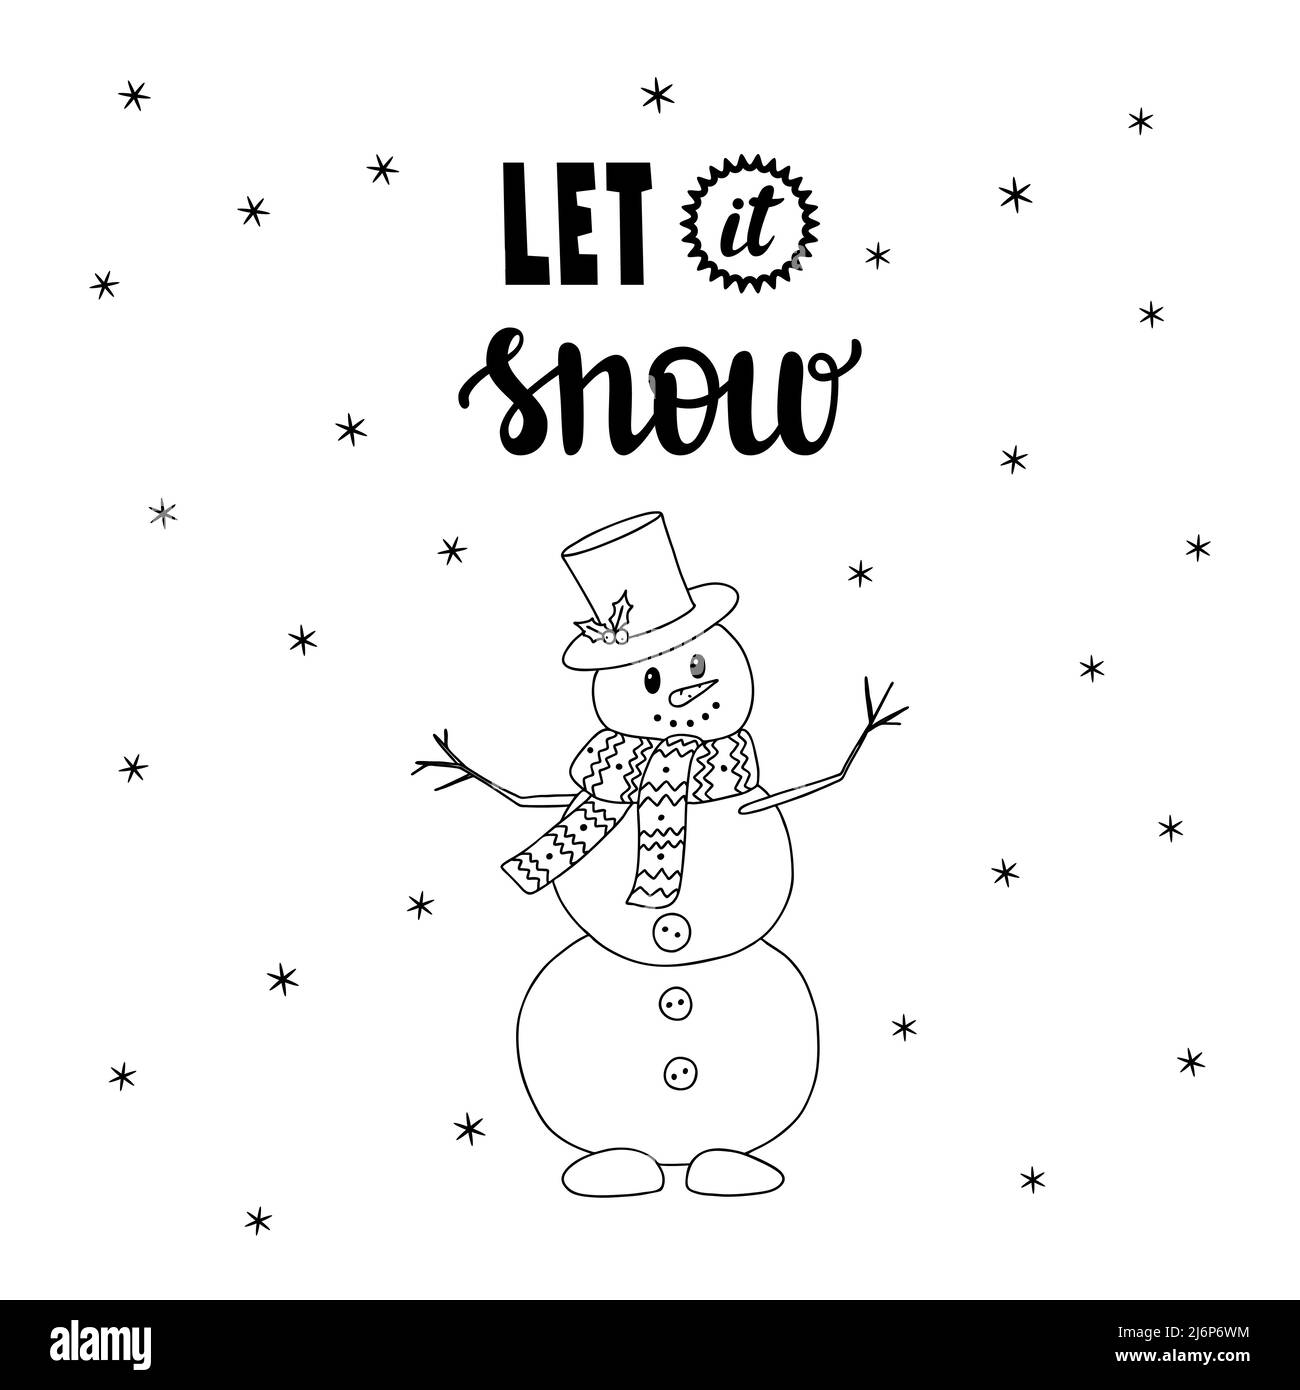 Schneemann im Doodle-Stil und von Hand geschriebene Worte – Lass es schneien. Handgezeichnete Buchstaben und dekorative Elemente. Schwarz-Weiß-Vektorgrafik. Isolat Stock Vektor